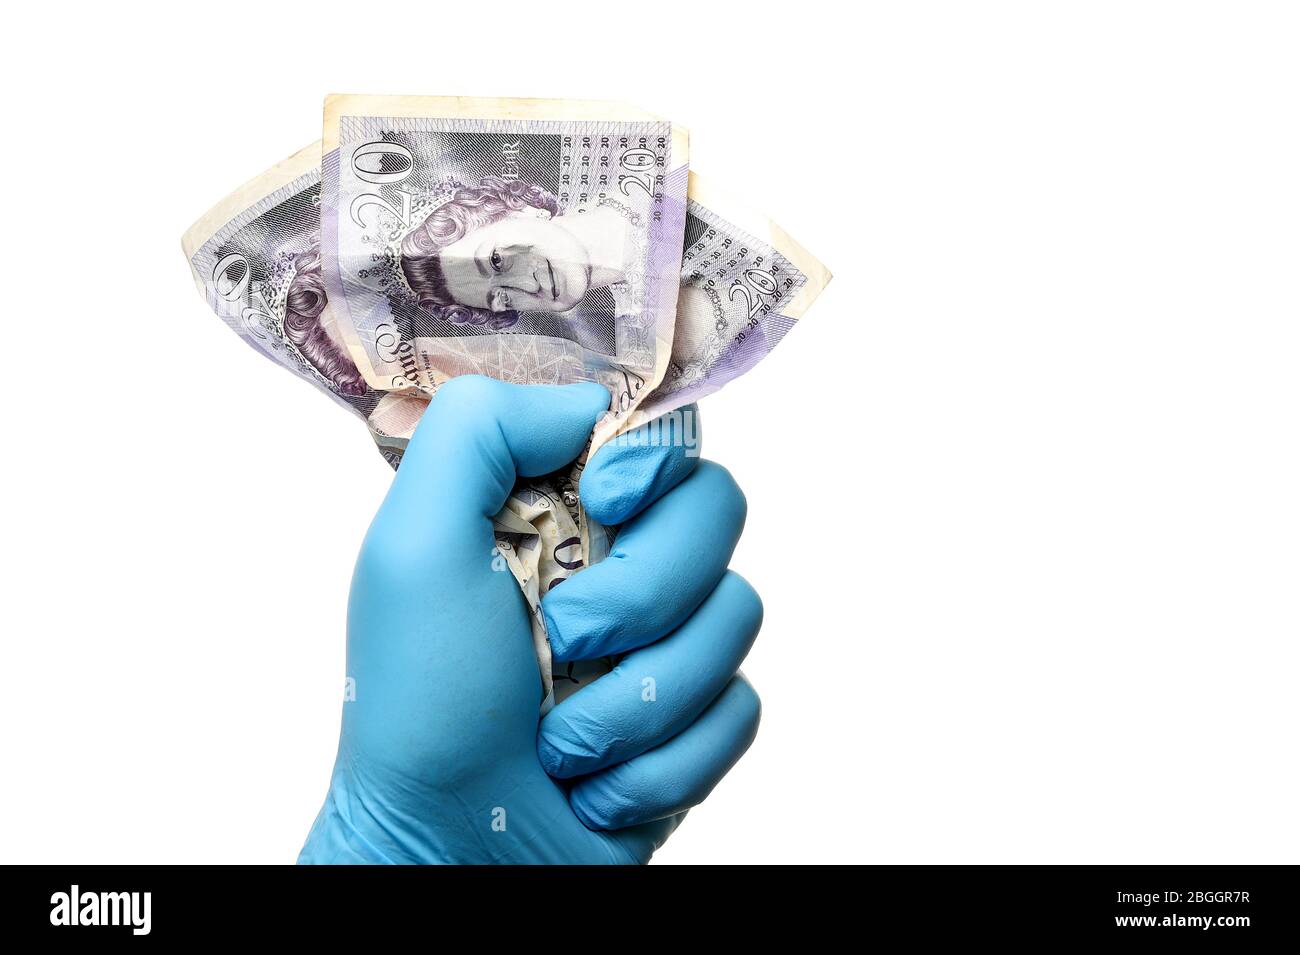 Covid 19 finanza concetto immagine di un uomo in un guanto chirurgico di gomma che tiene UK 20 banconote da libbra come coronavirus schiaccia l'economia Foto Stock